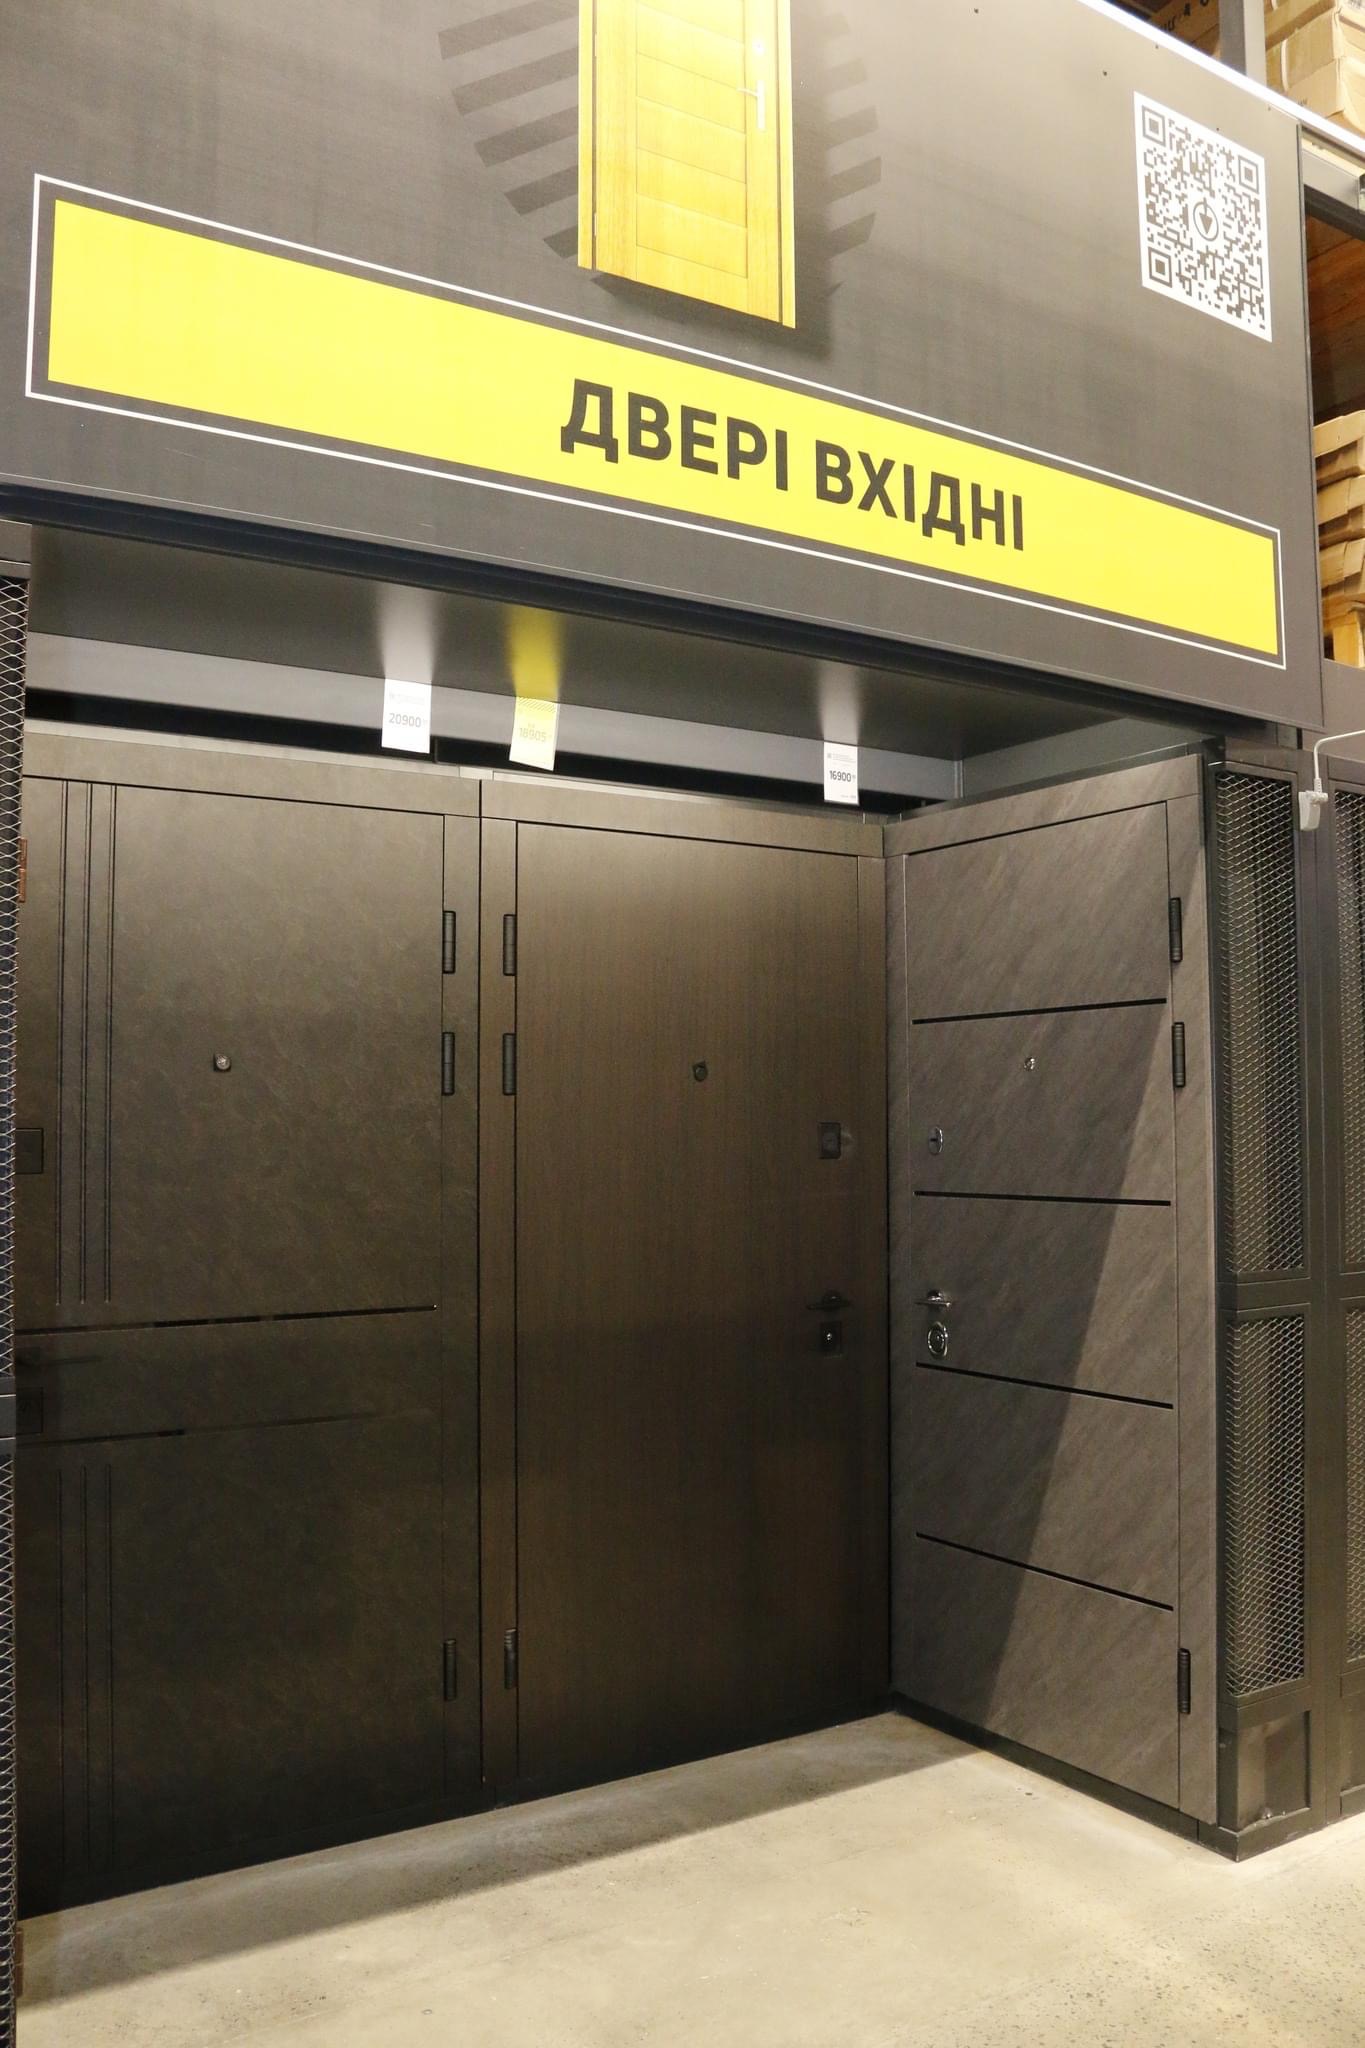 Чернігівська фабрика дверей - найперспективніша компанія України за версією Forbes Ukraine